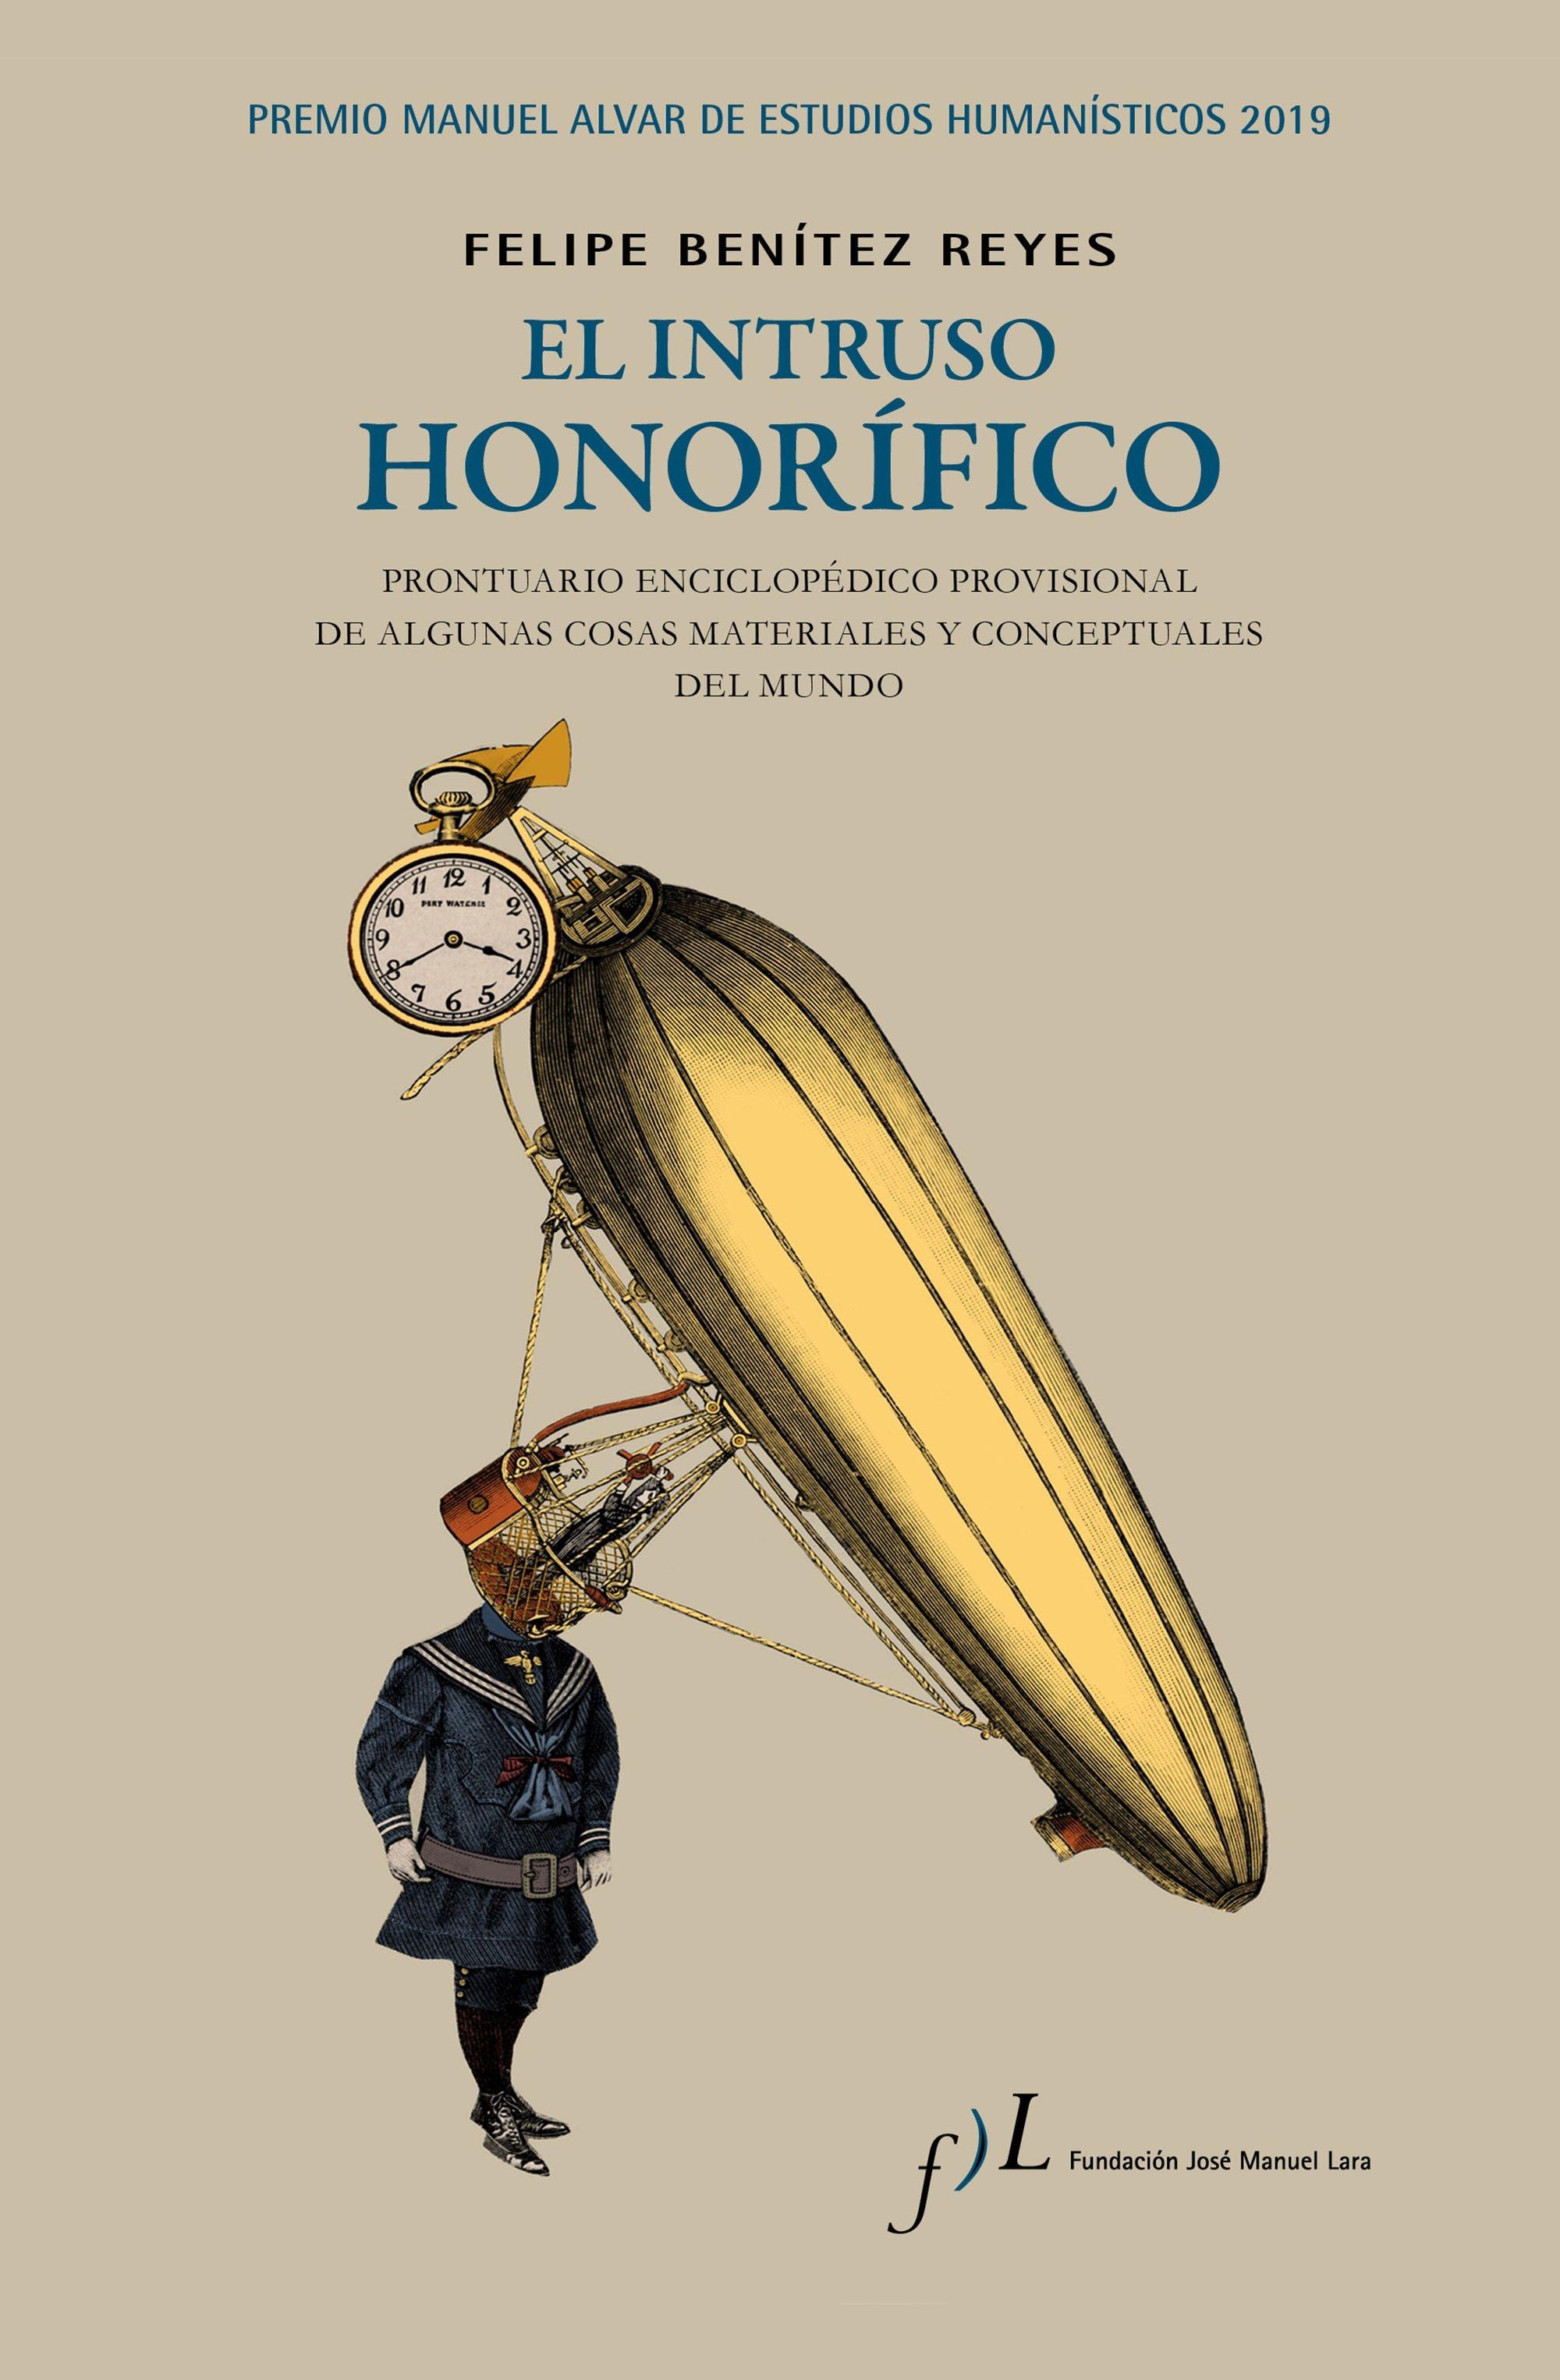 El Intruso Honorífico "Premio Manuel Alvar de Estudios Humanísticos 2019". 